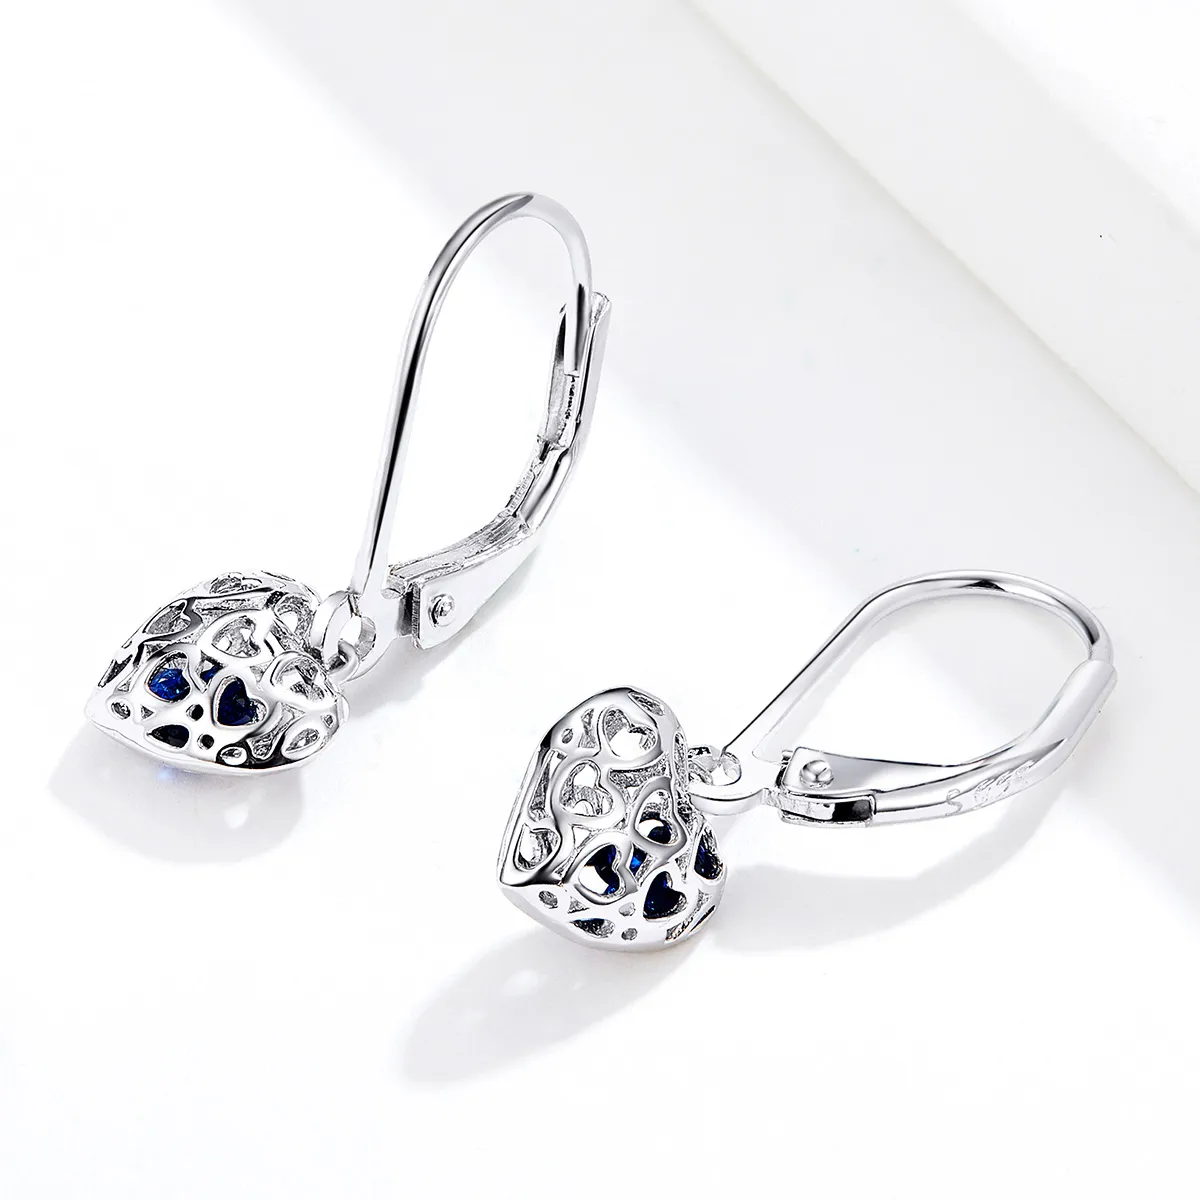 Pandora Style Silver Heart Shape Dangle Earrings - SCE746